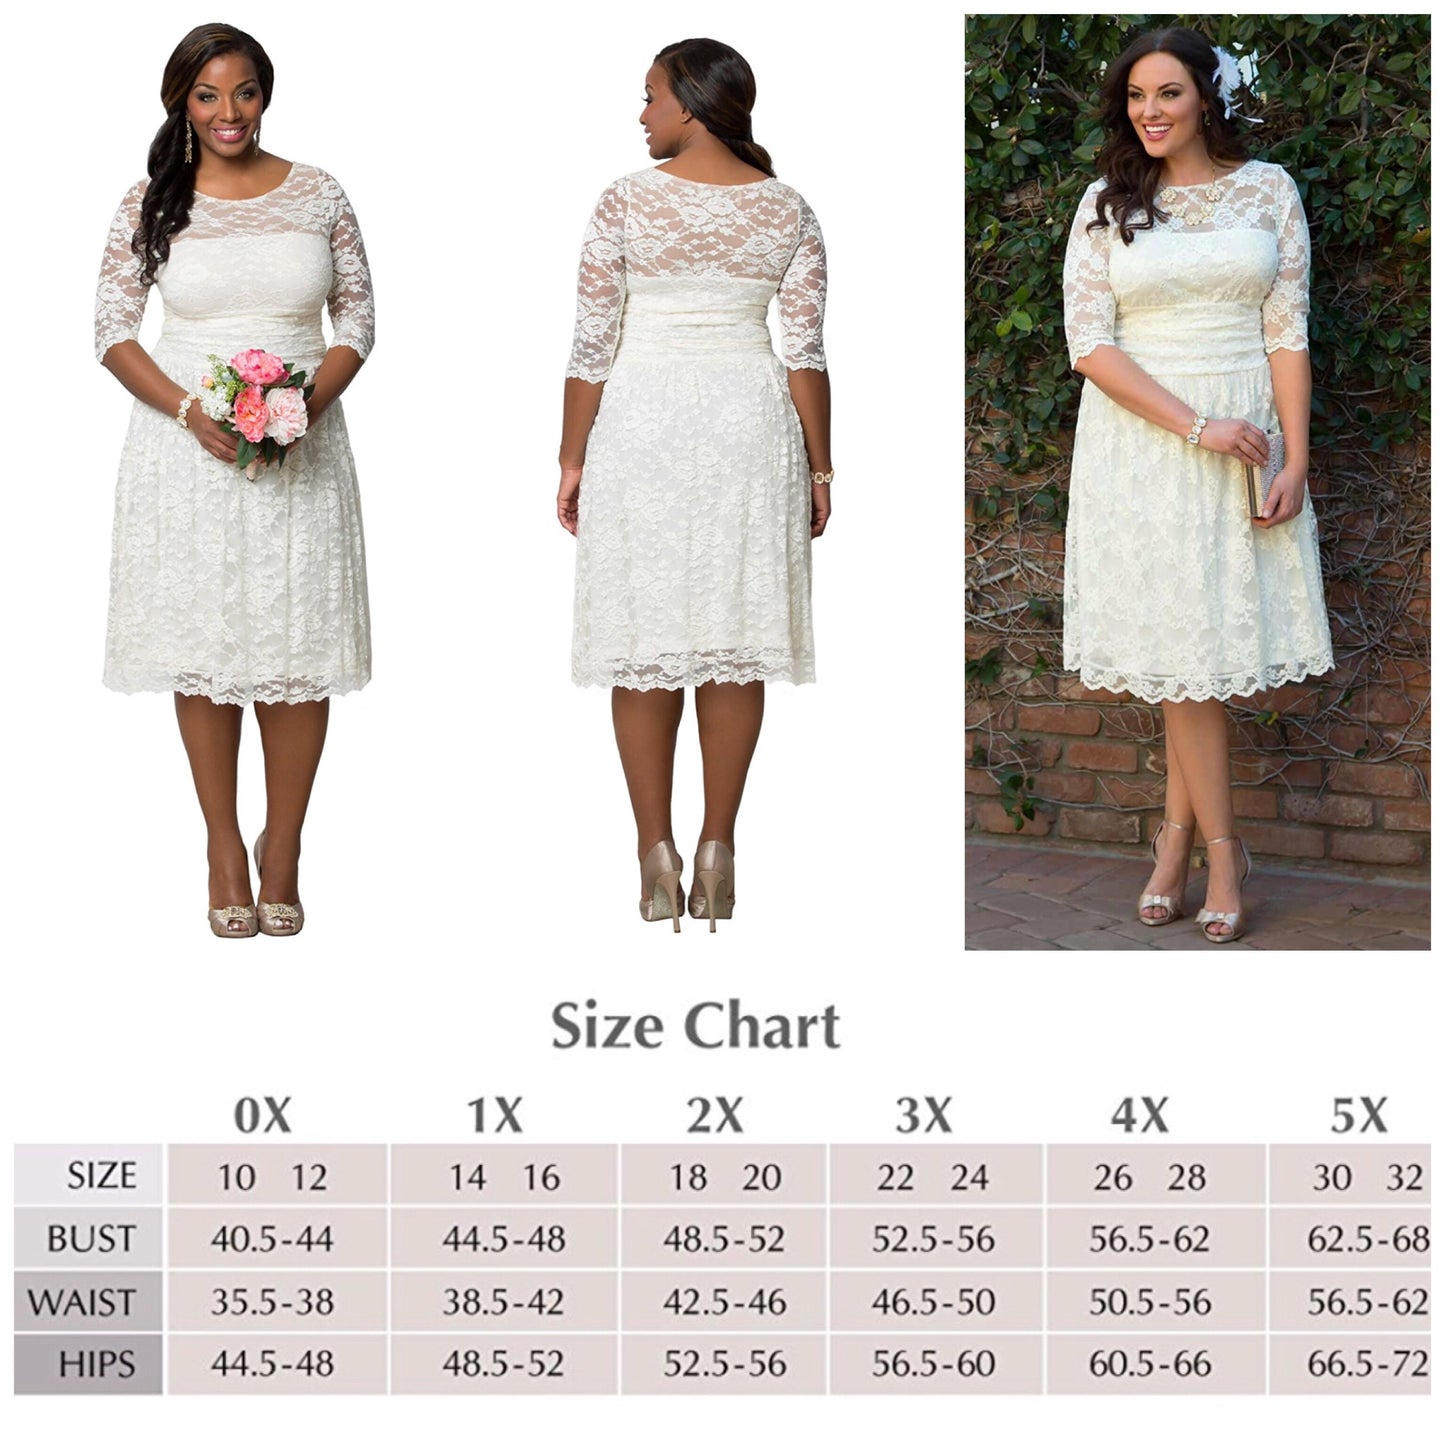 Women's Dress Size Chart - US Dress Sizes